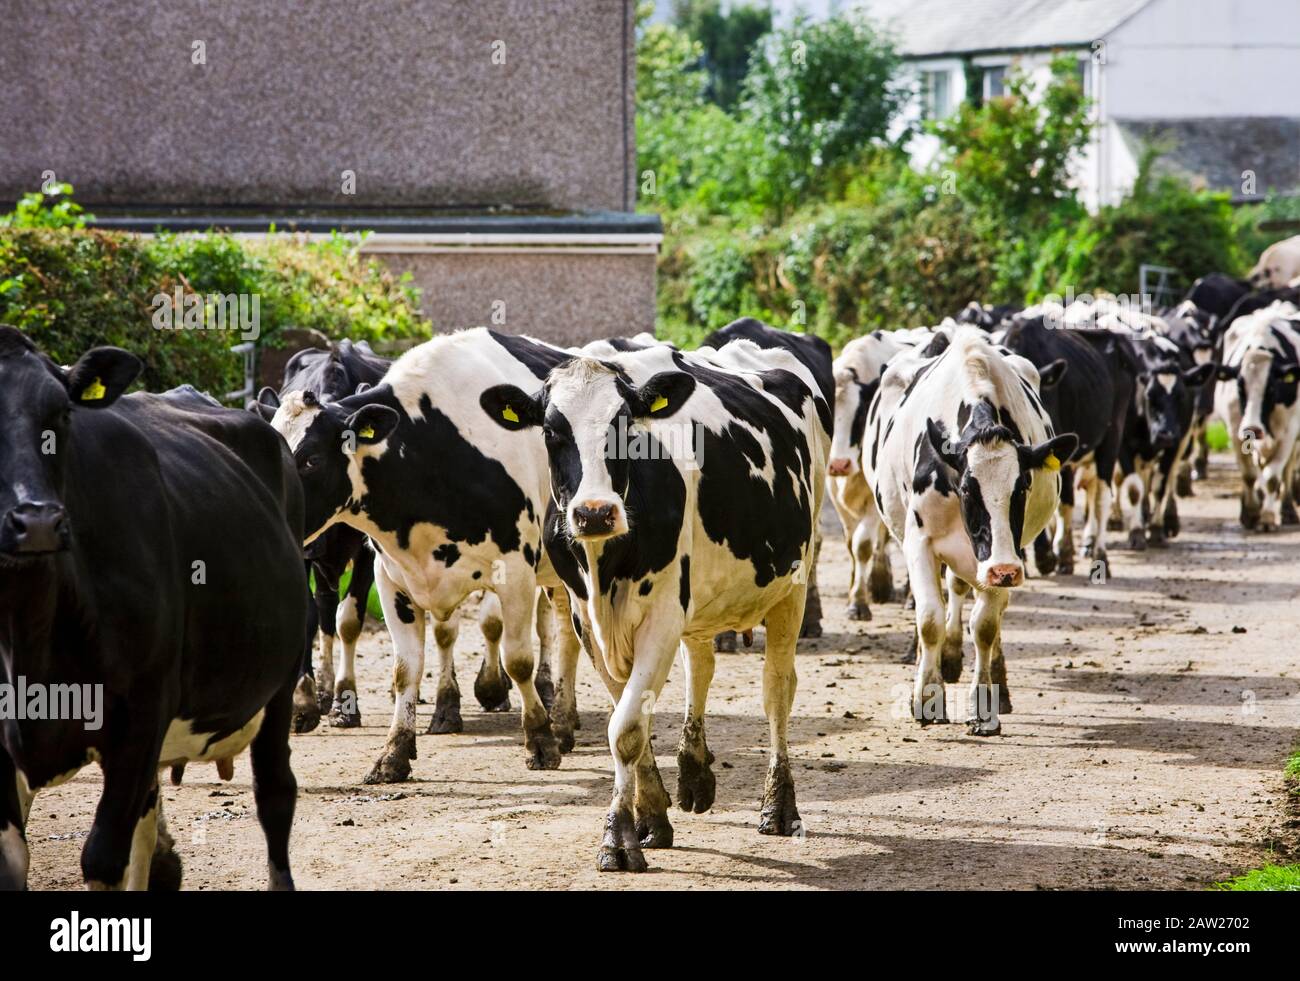 Troupeau de vaches laitières marchant sur une voie rurale vers une ferme, Angleterre, Royaume-Uni Banque D'Images